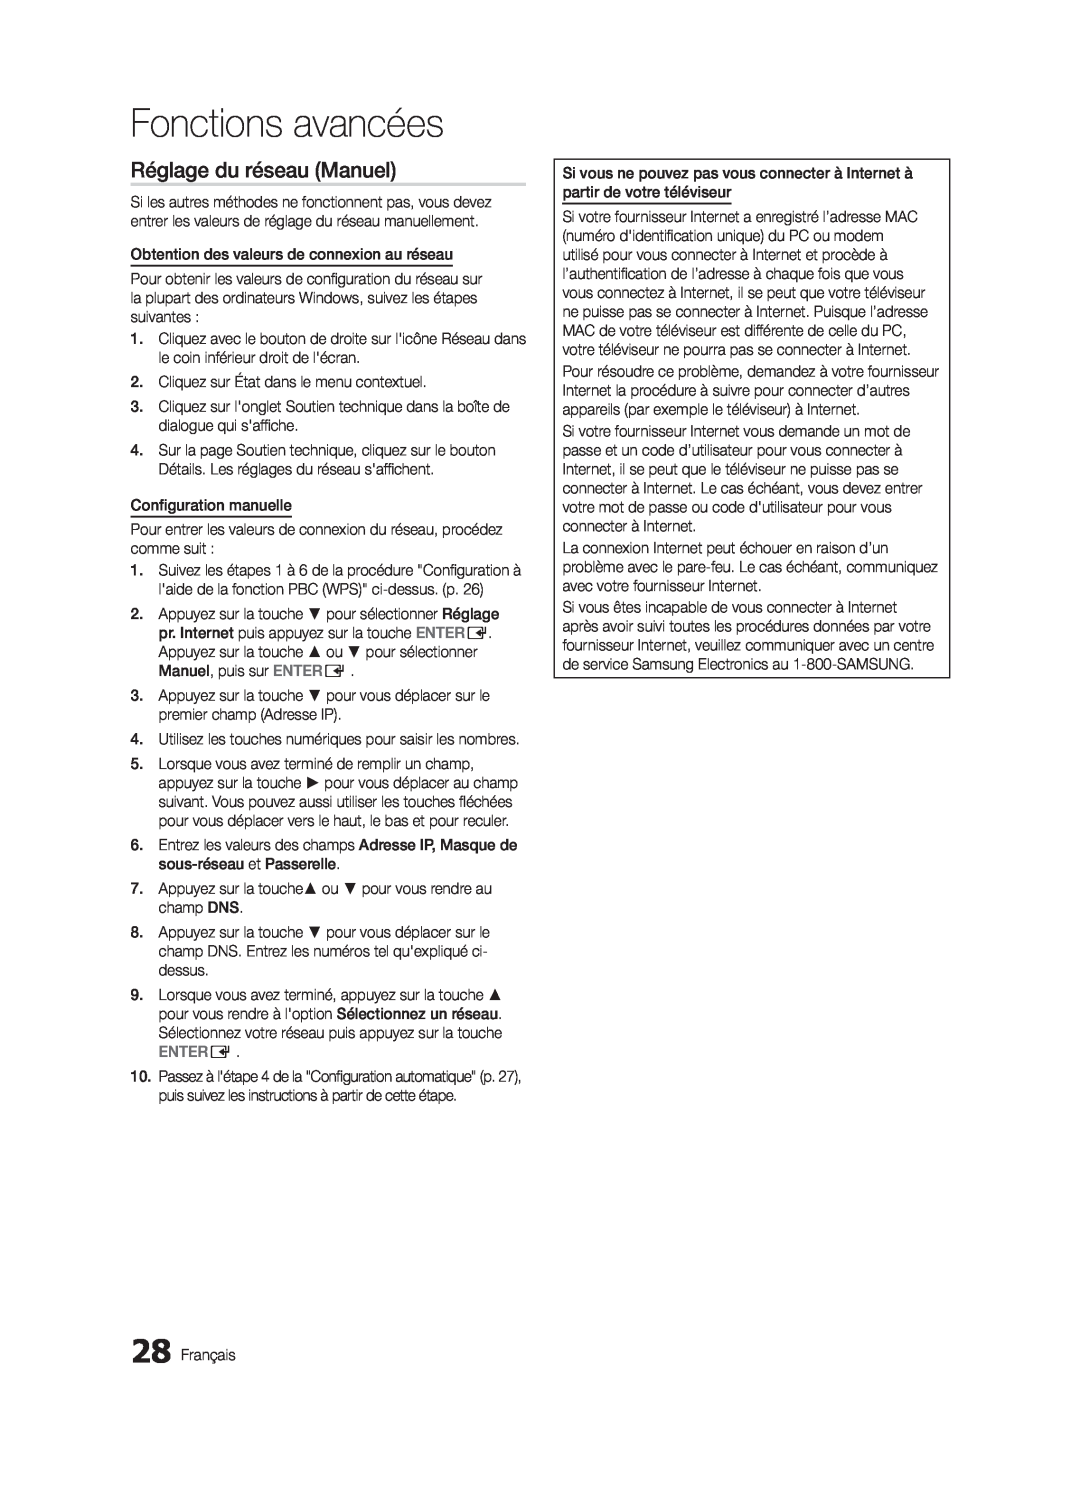 Samsung LN32C550 user manual Fonctions avancées, Réglage du réseau Manuel, Entere 